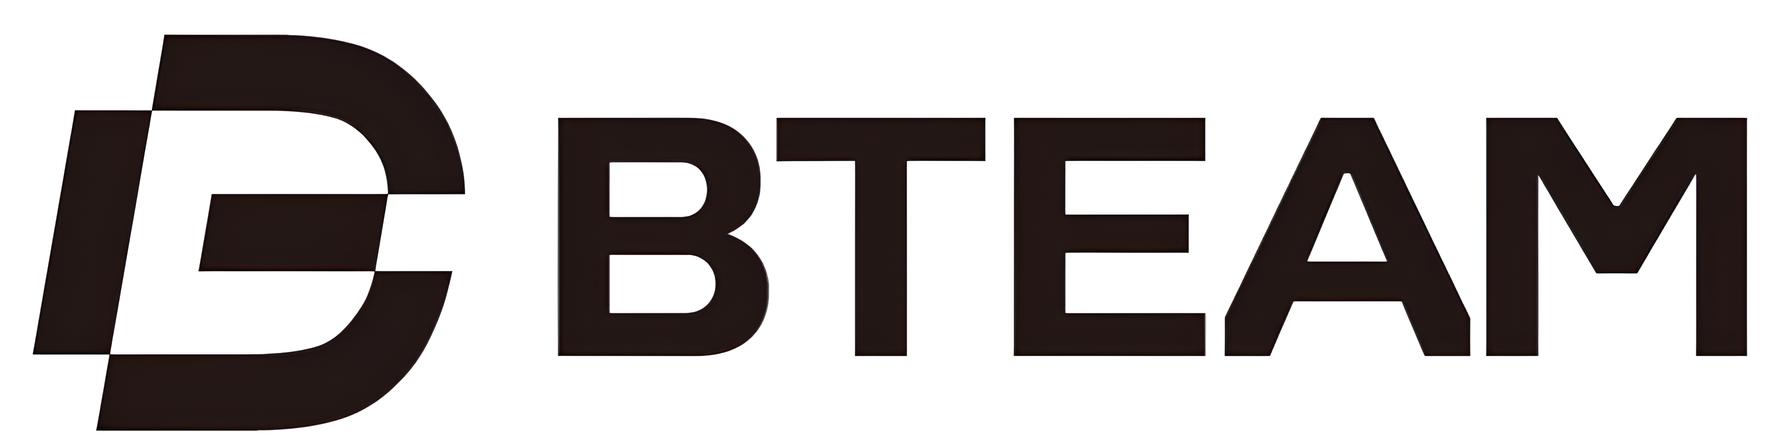 BTEAM_logo